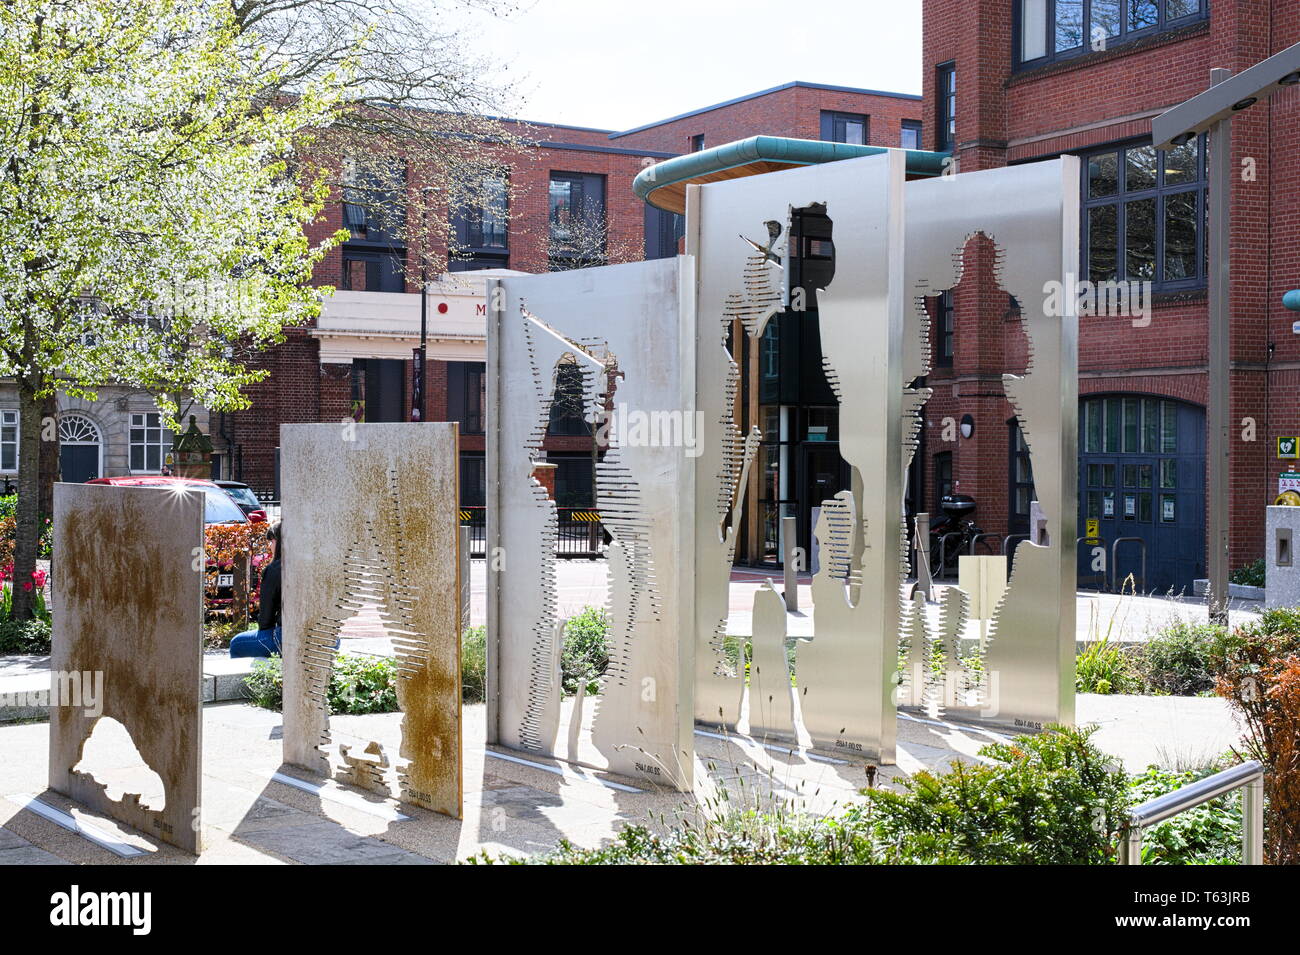 Leicester, l'art public - vers l'immobilité. Banque D'Images